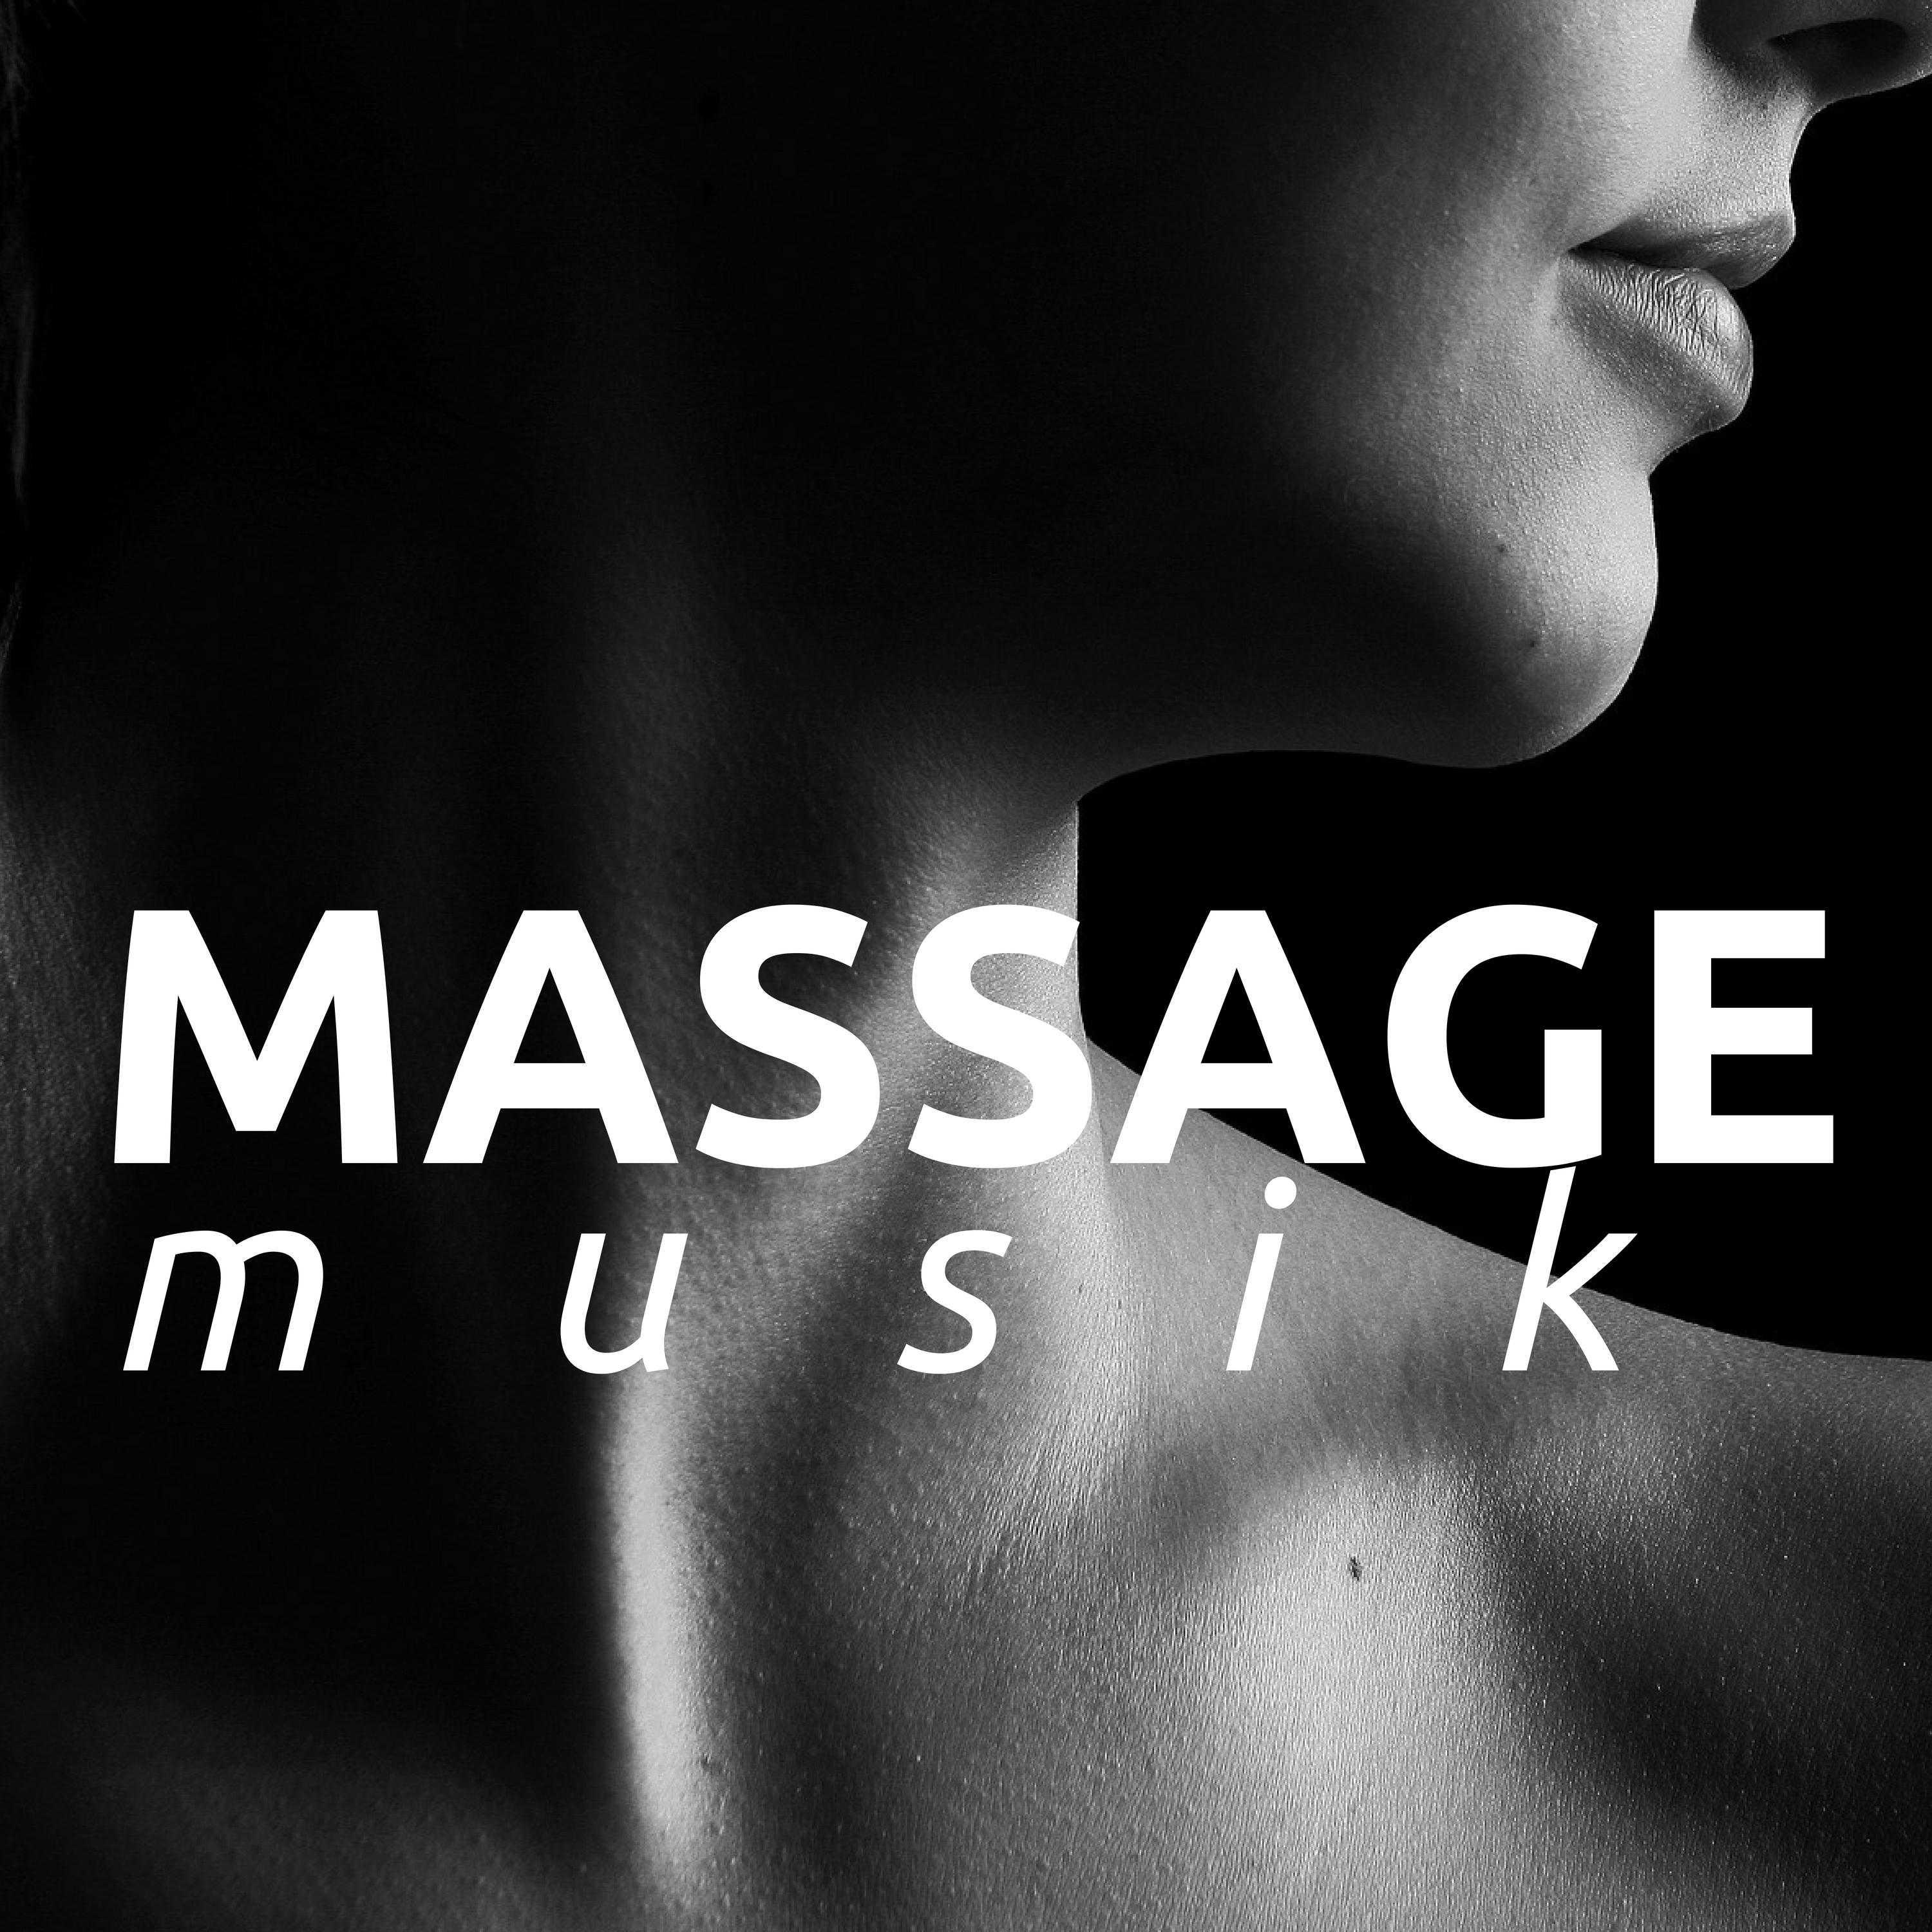 2 + Stunden Massage Musik: Die Massage dient ausschließlich zur Entspannung und ist ideal um in der hektischen Zeit der Schwangerschaft einen Moment der Ruhe zu finden